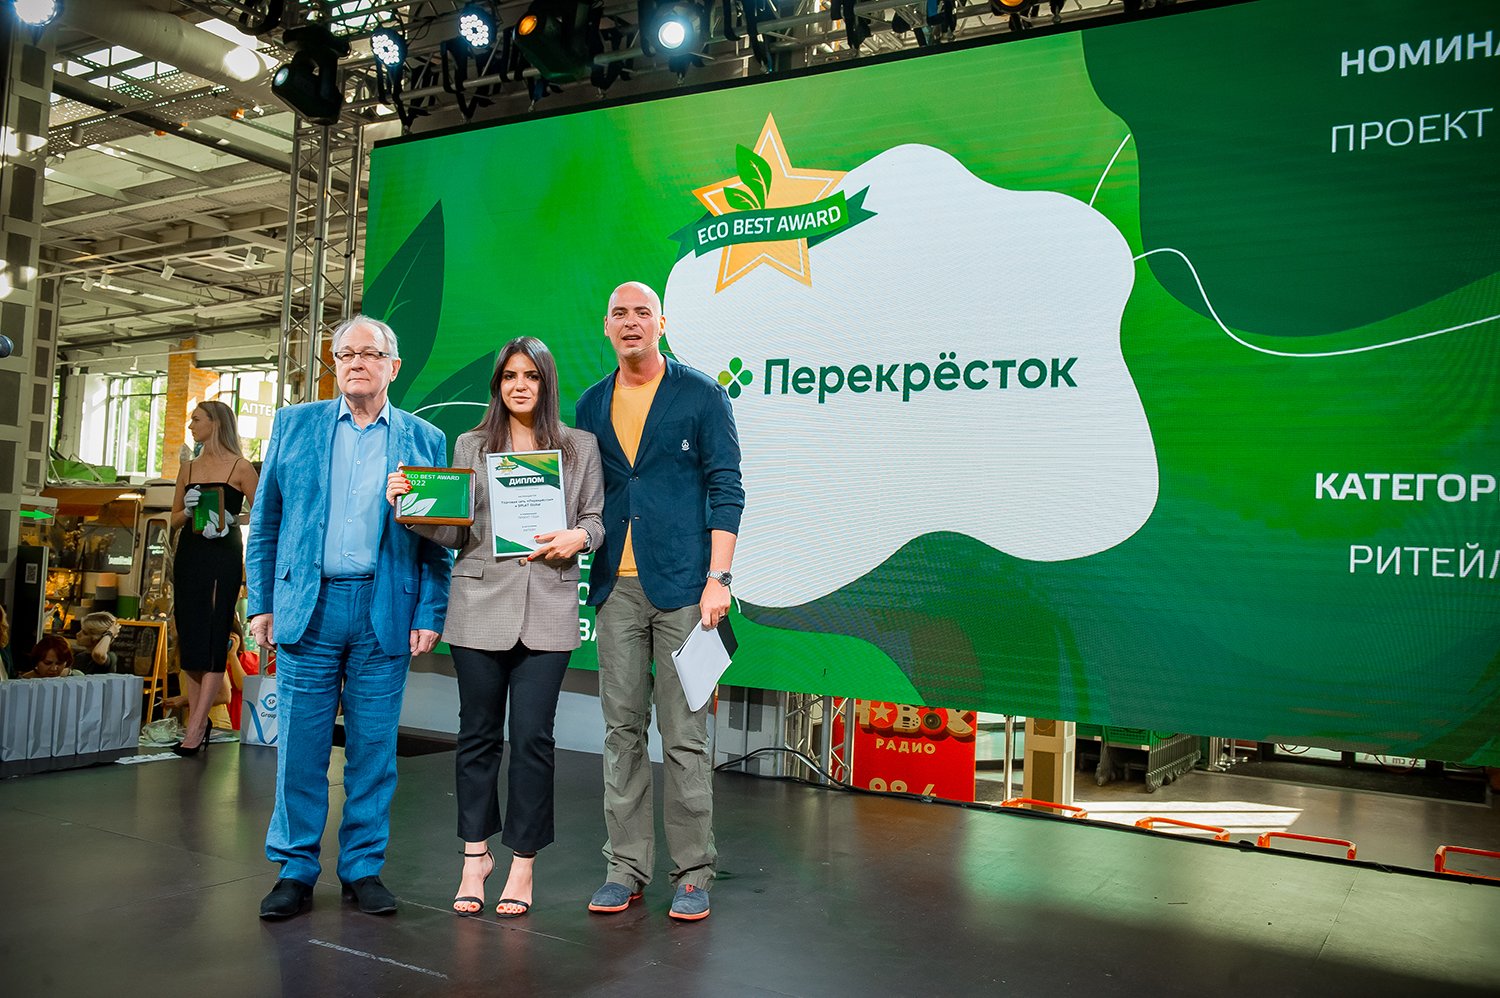 «Перекрёсток» стал победителем шестой ежегодной премии «Здоровое питание-2022» и лауреатом премии ECO BEST